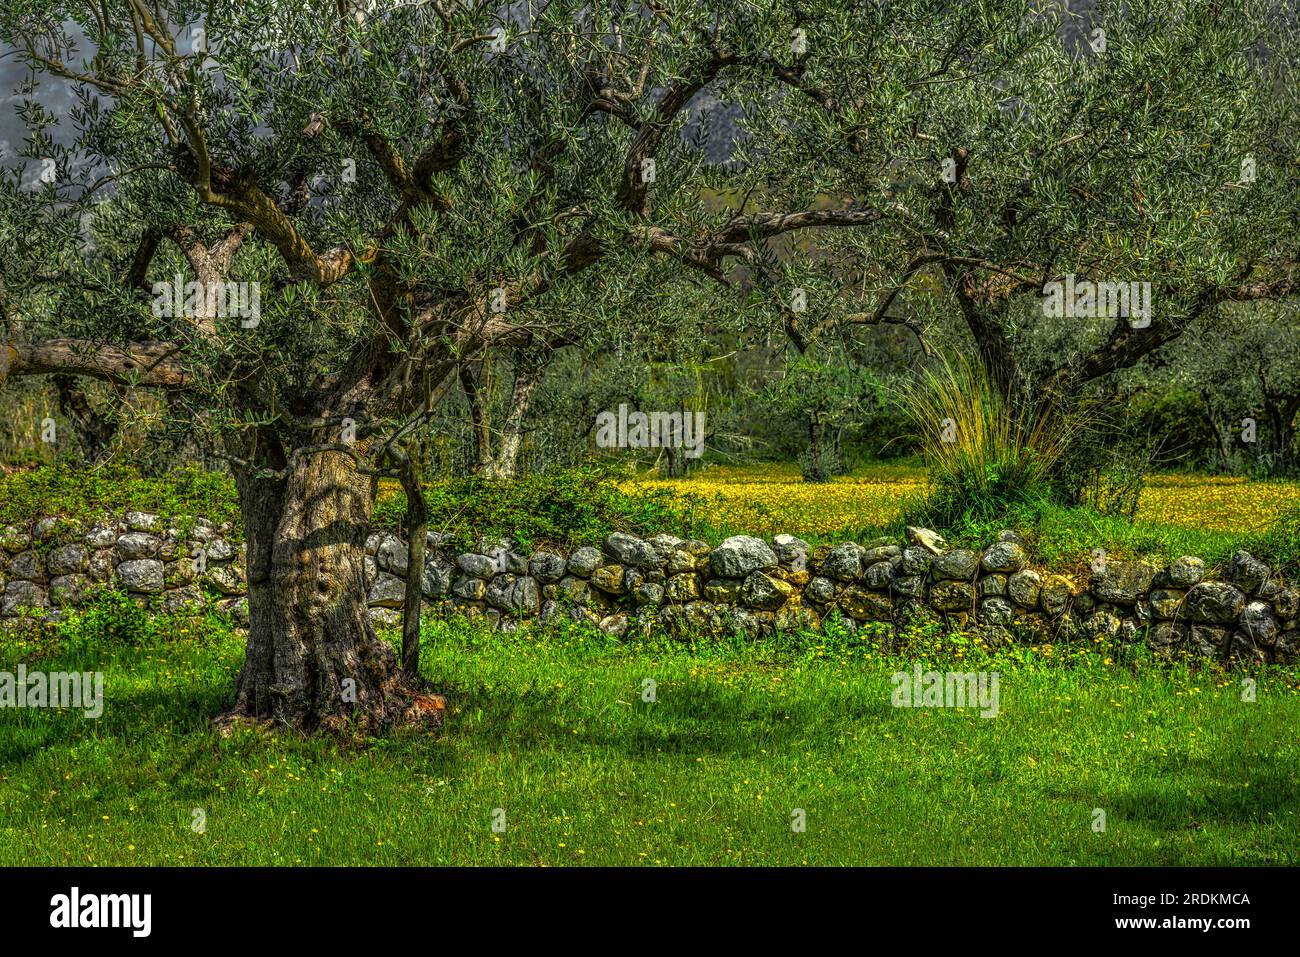 Piantagione di olivi mediterranei con vecchi alberi di ulivo e mura in pietra. Foto Stock